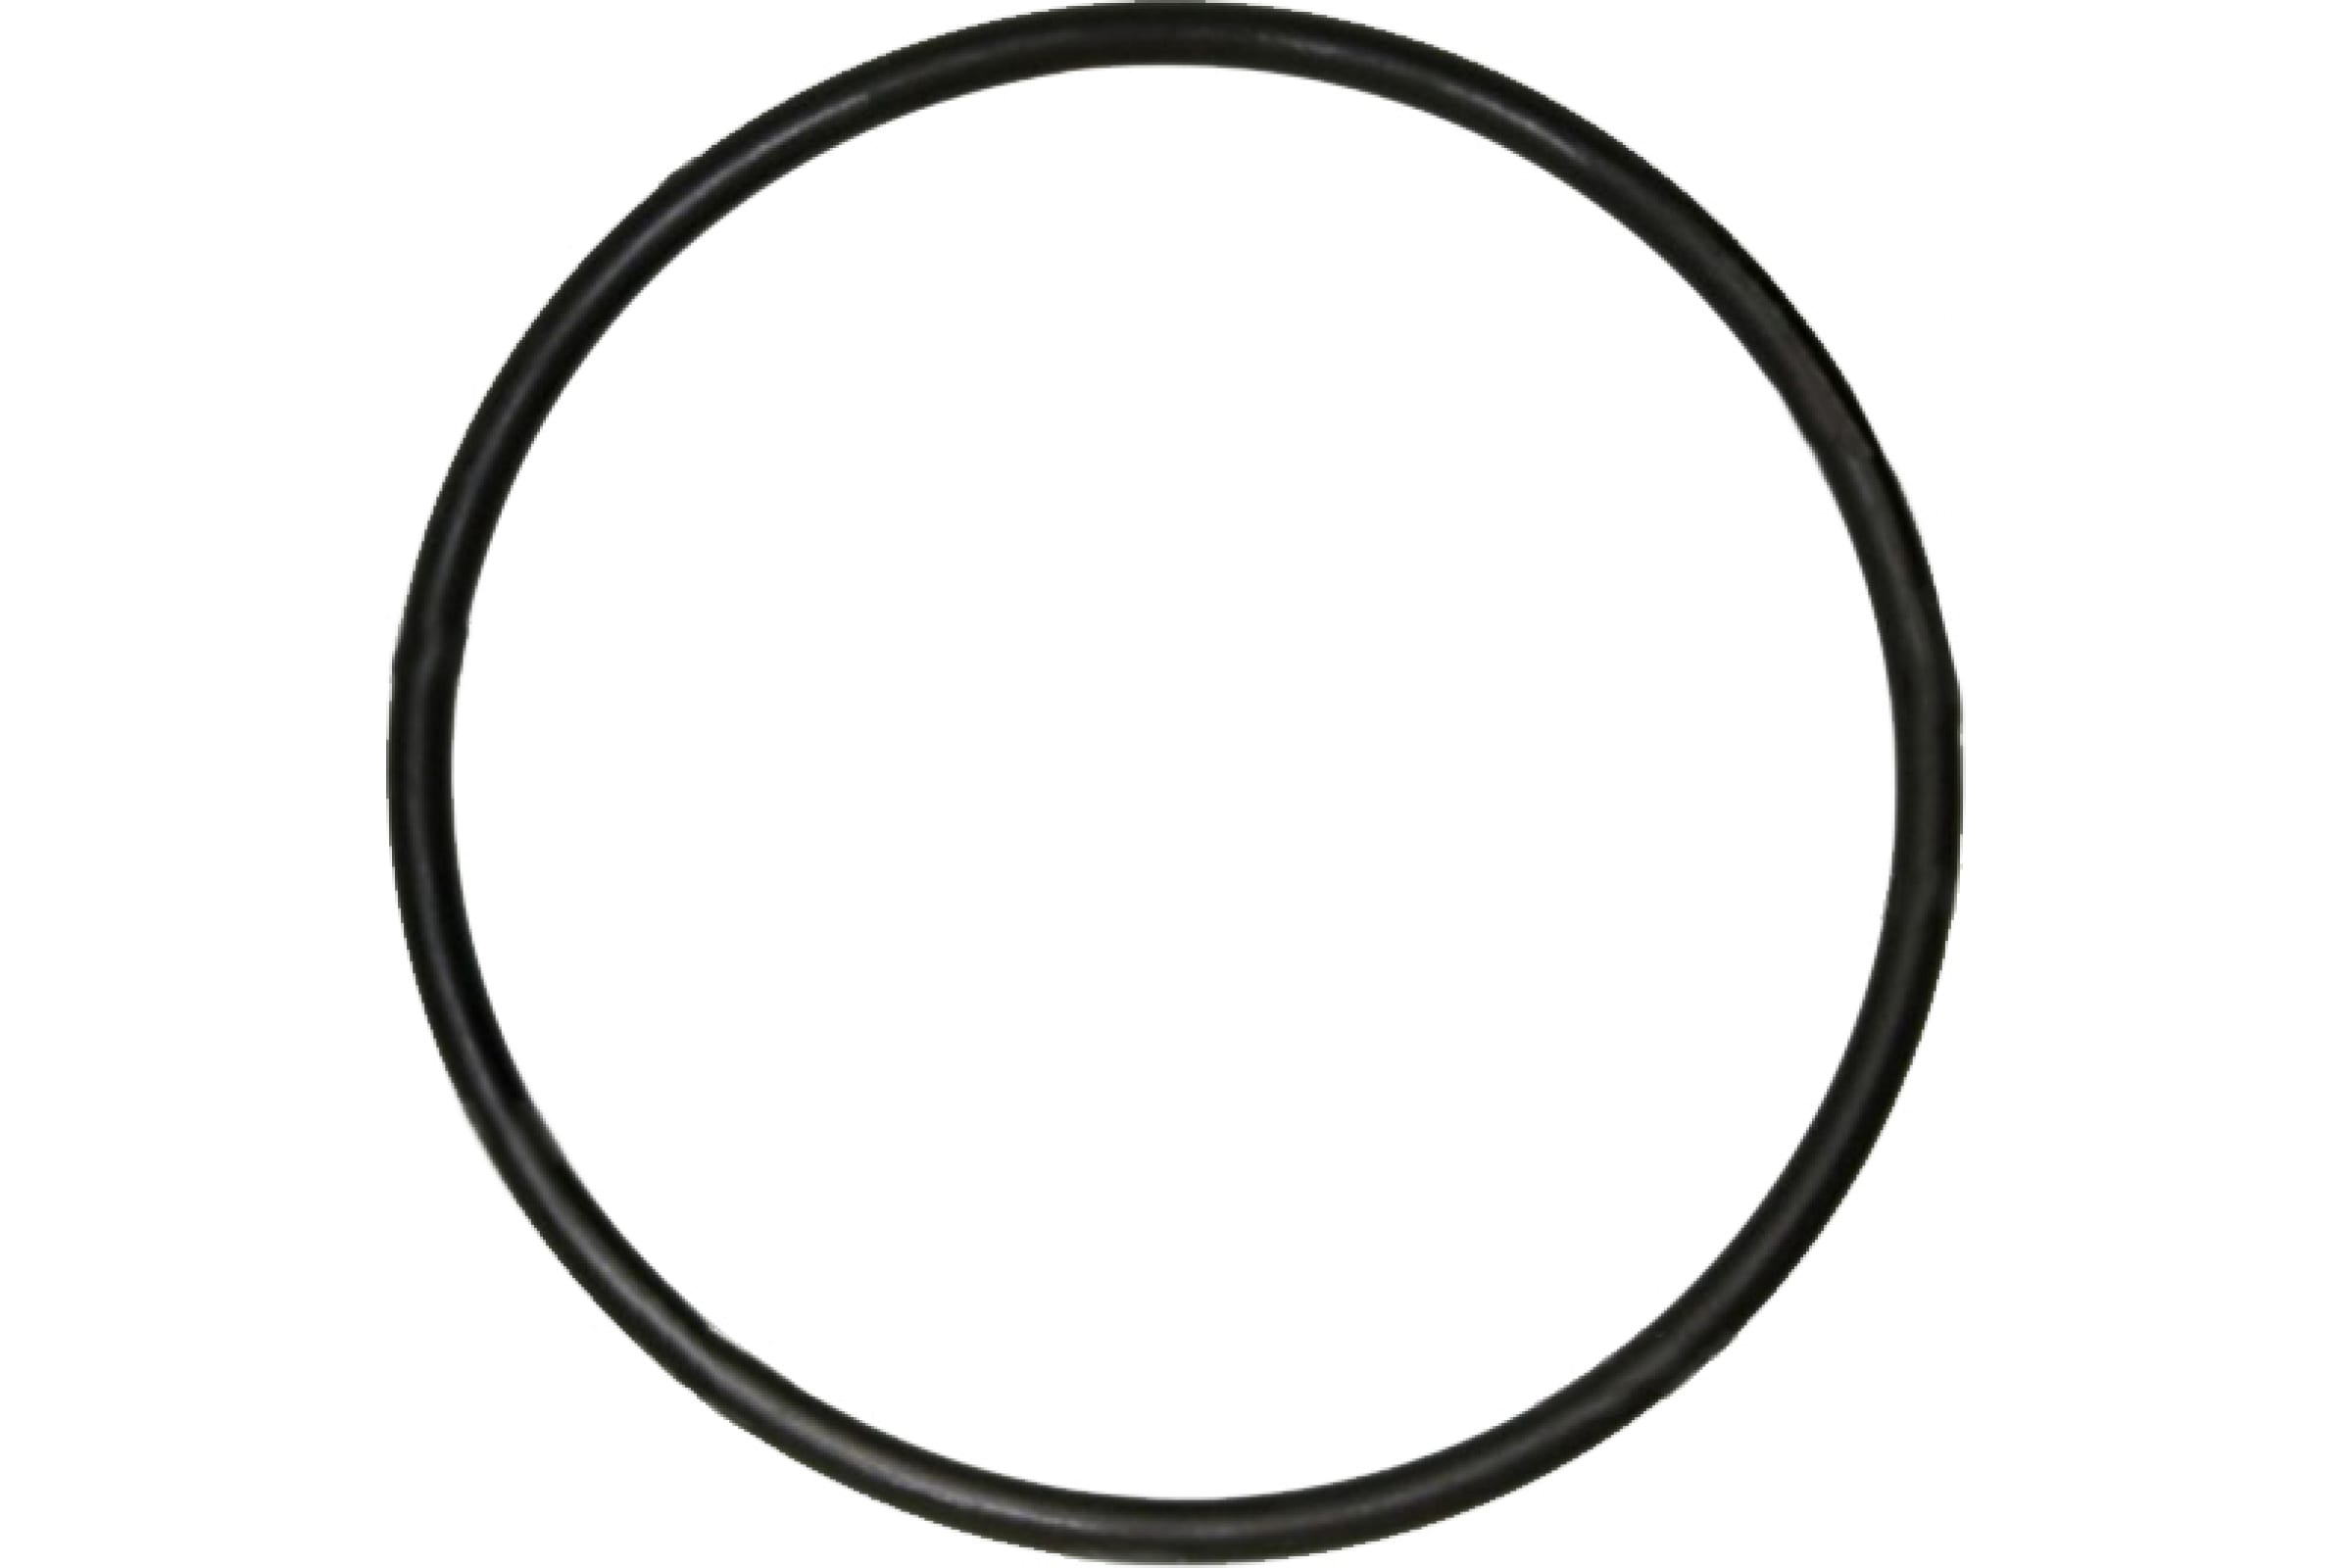 Промрукав Кольцо резиновое уплотнительное для двустенной трубы д63 1шт PR08.3157 резиновое уплотнительное кольцо для двустенной трубы промрукав